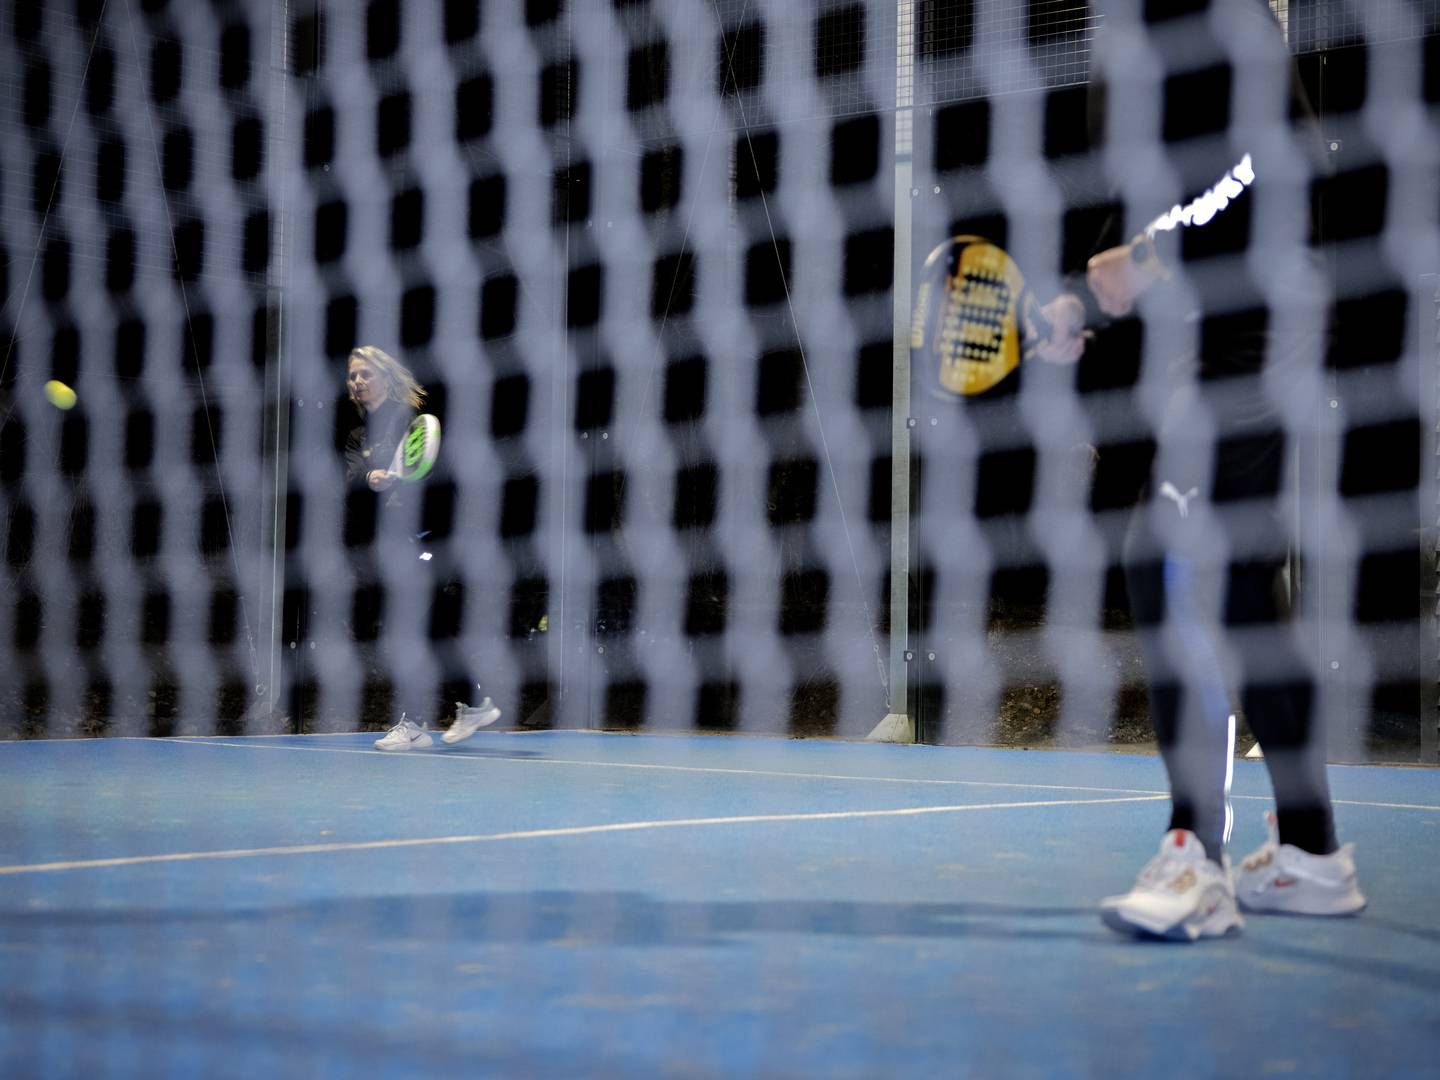 Padel, også kaldet padel-tennis, er en forholdsvis ny sport i Danmark, hvor man groft sagt kombinerer tennis og squash | Foto: Marius Renner / Ritzau Scanpix